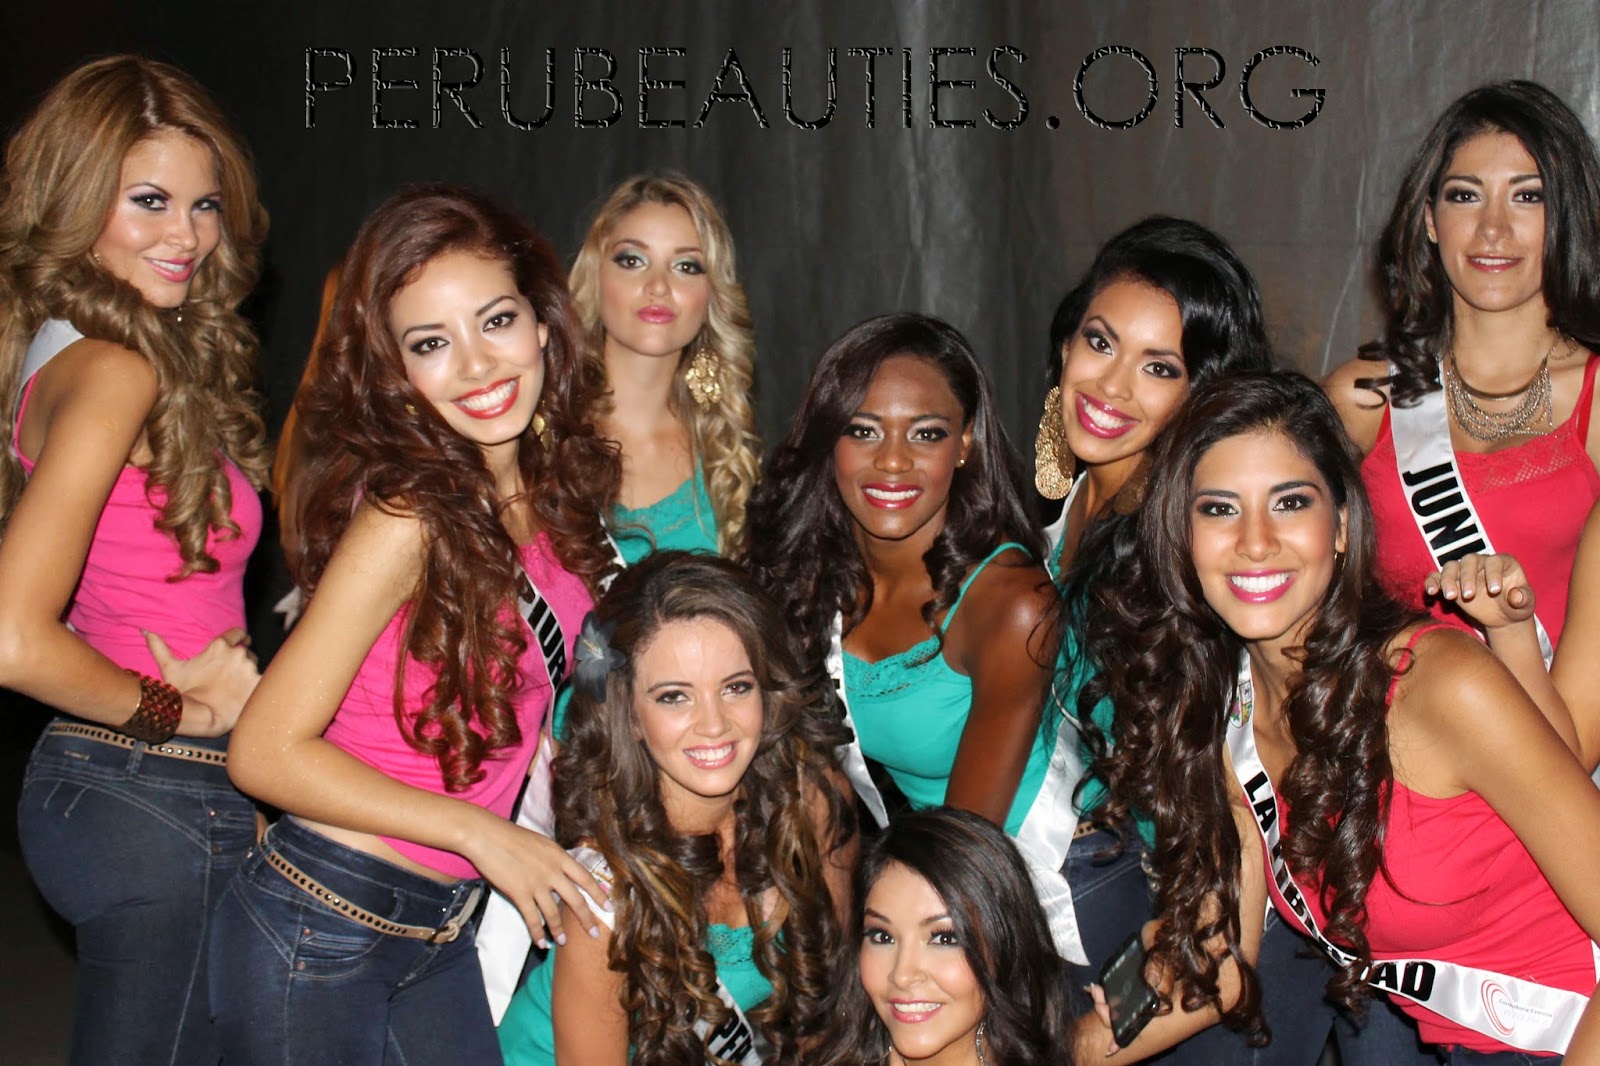 Road to Miss Peru Universe 2014 IMG_1099